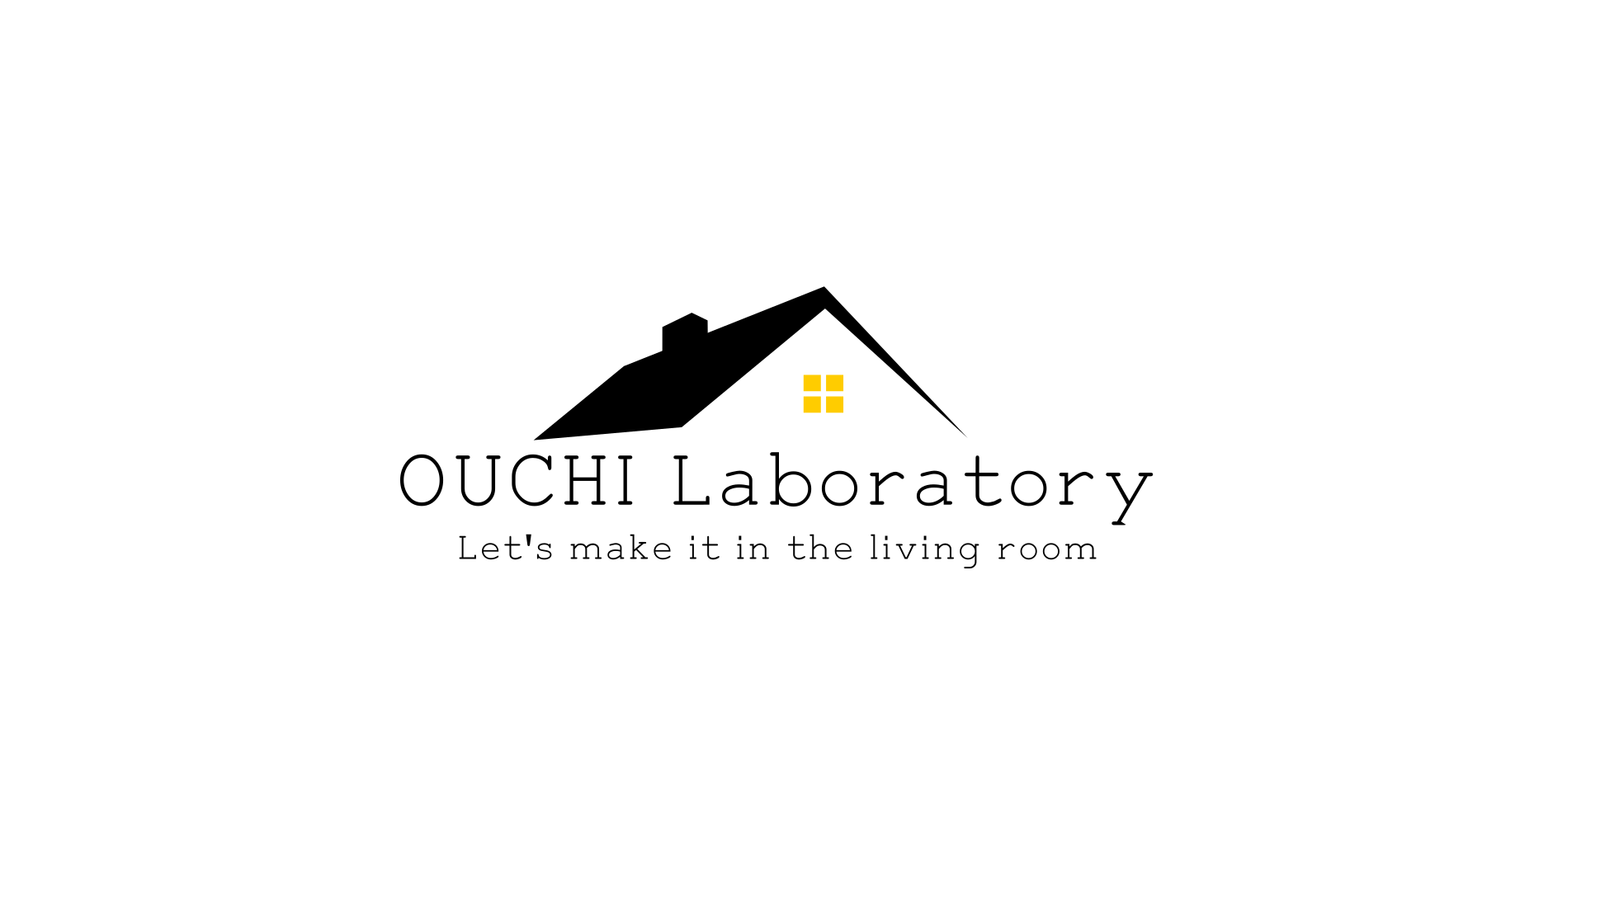 OUCHI Laboratory